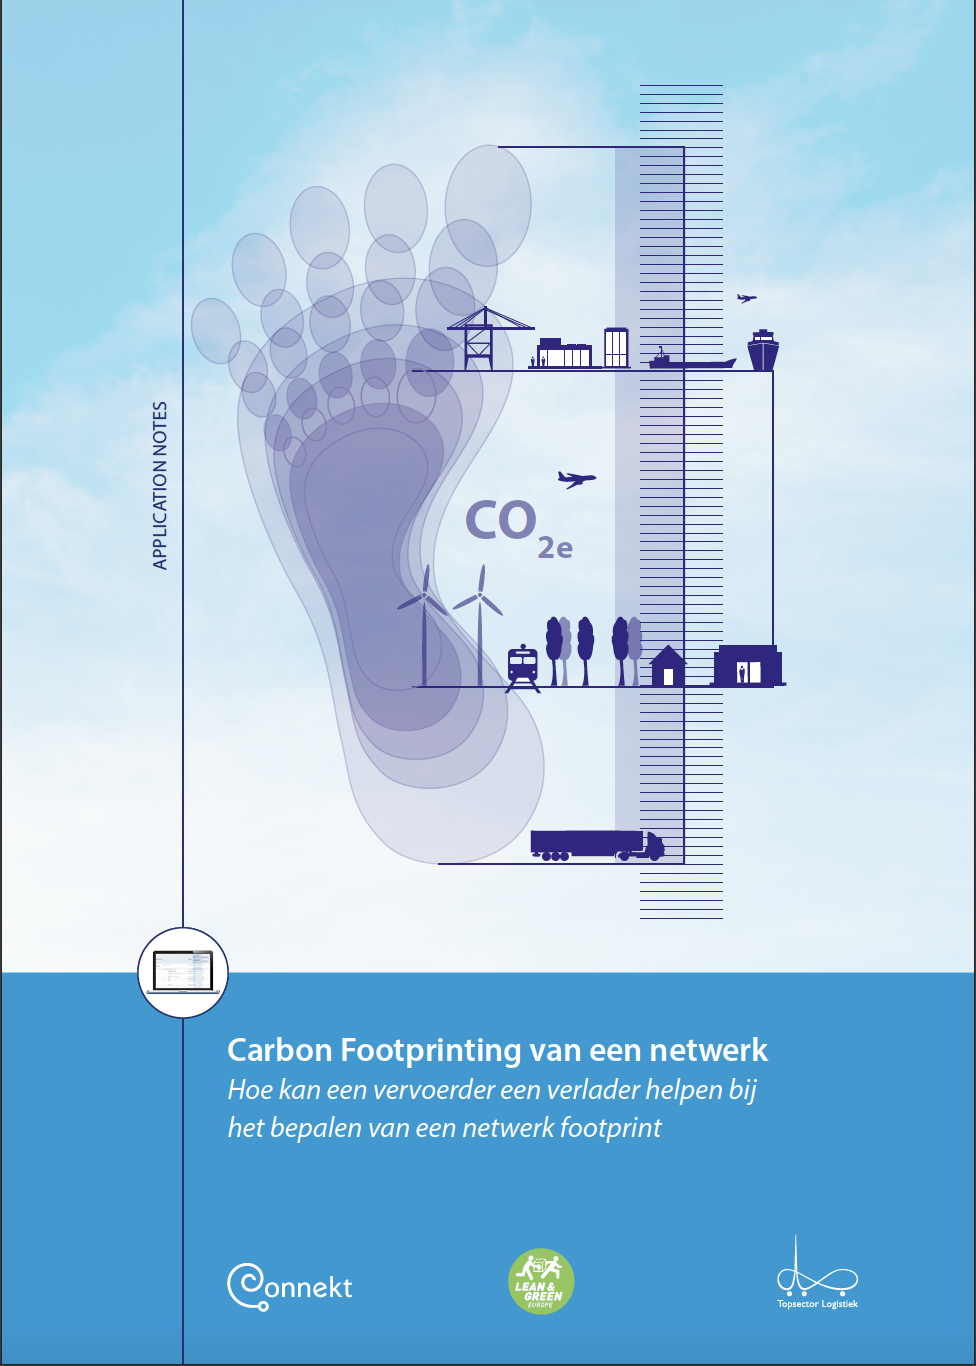 Application Note Carbon footprinting van een Netwerk